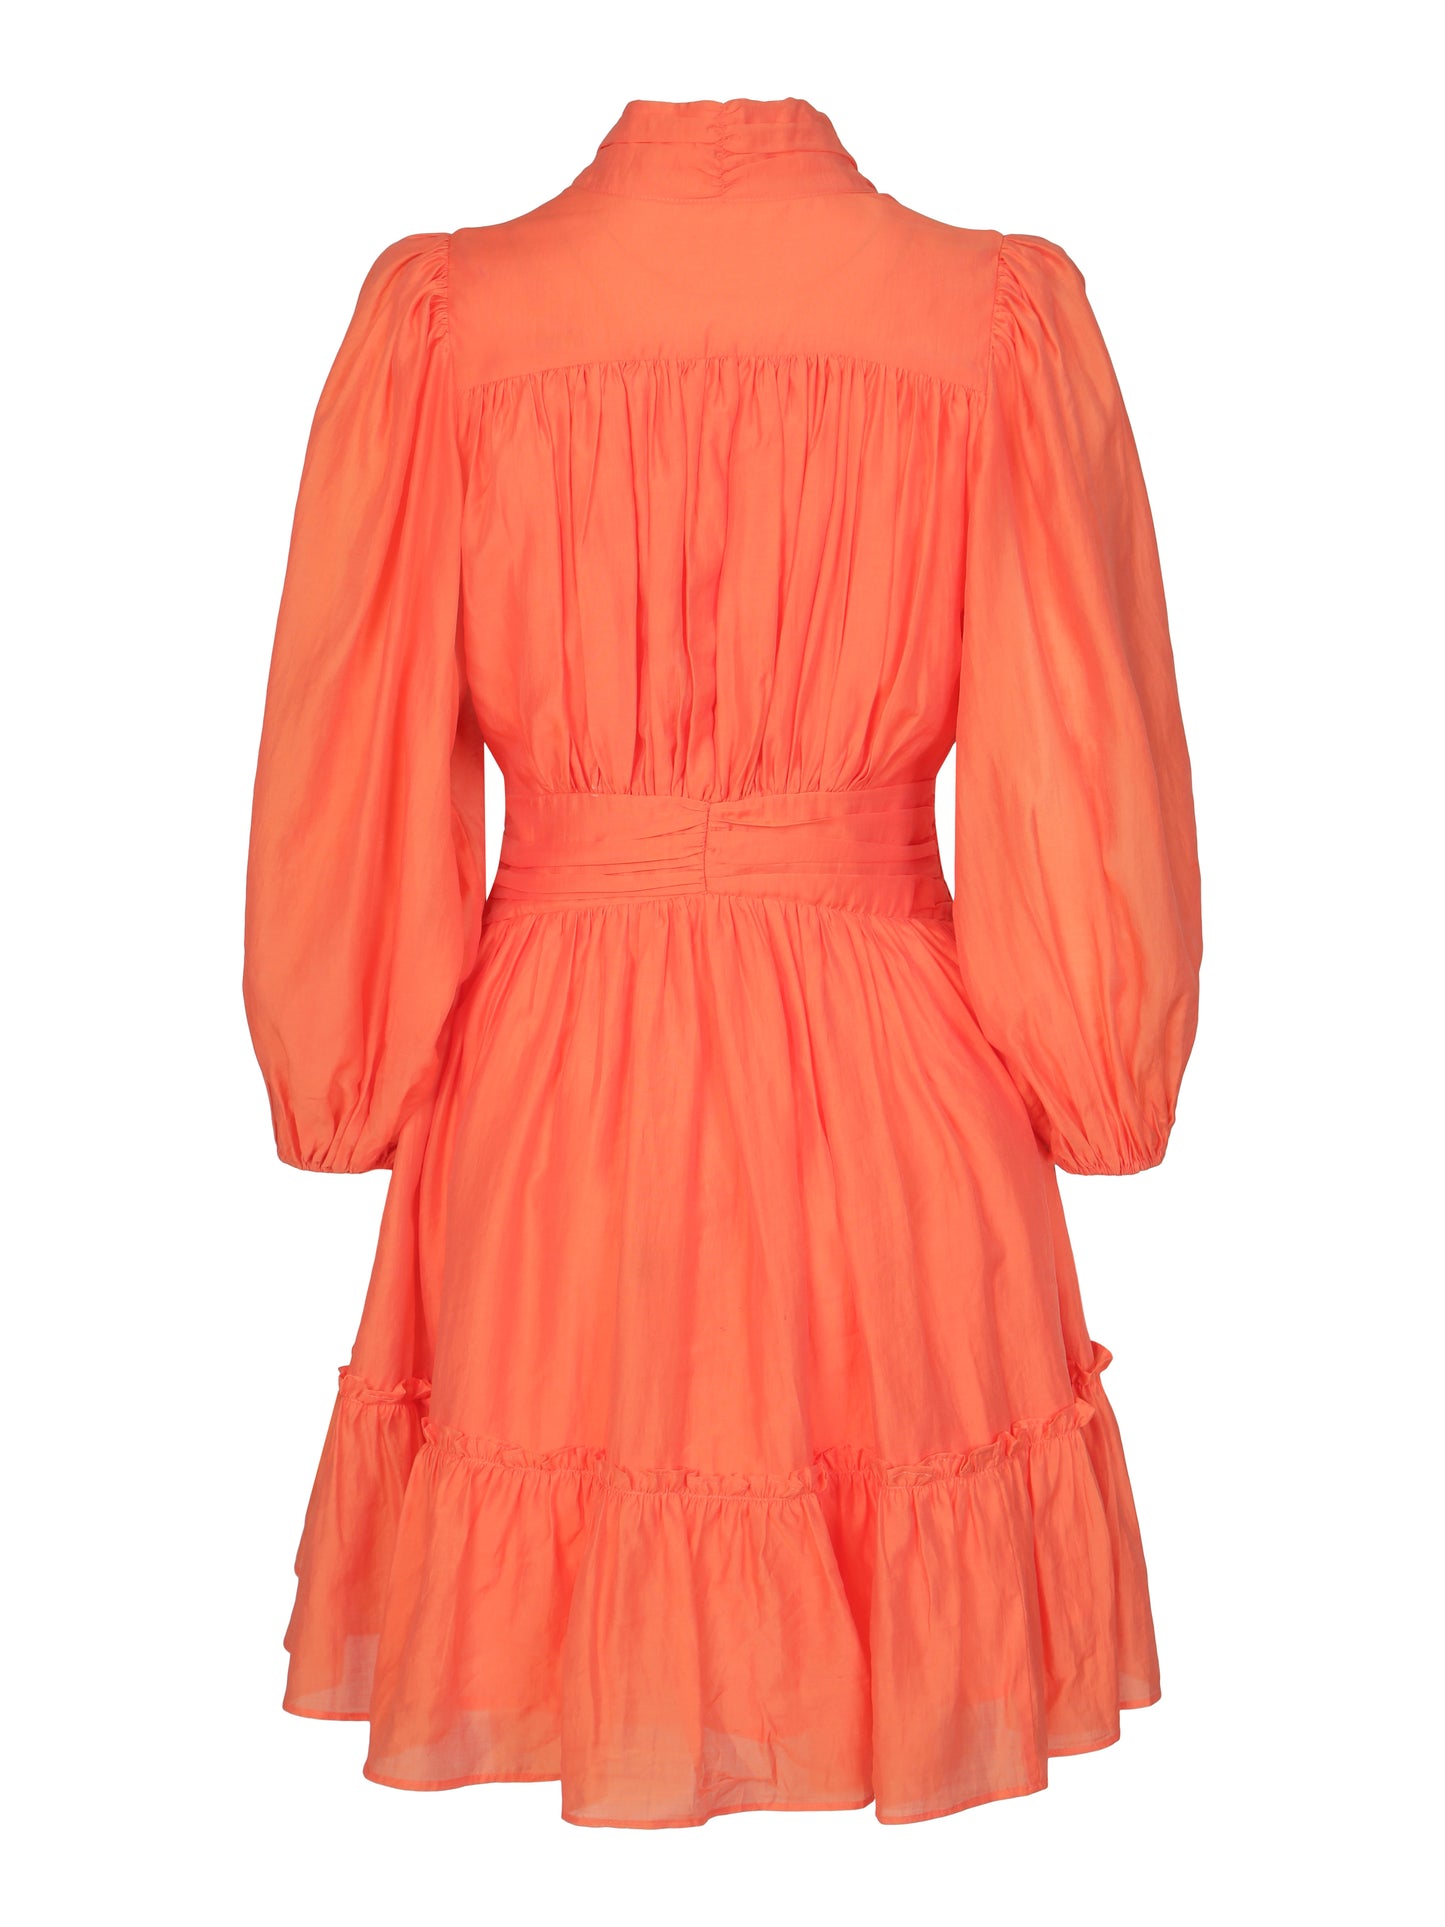 Vanity Dress - Orange